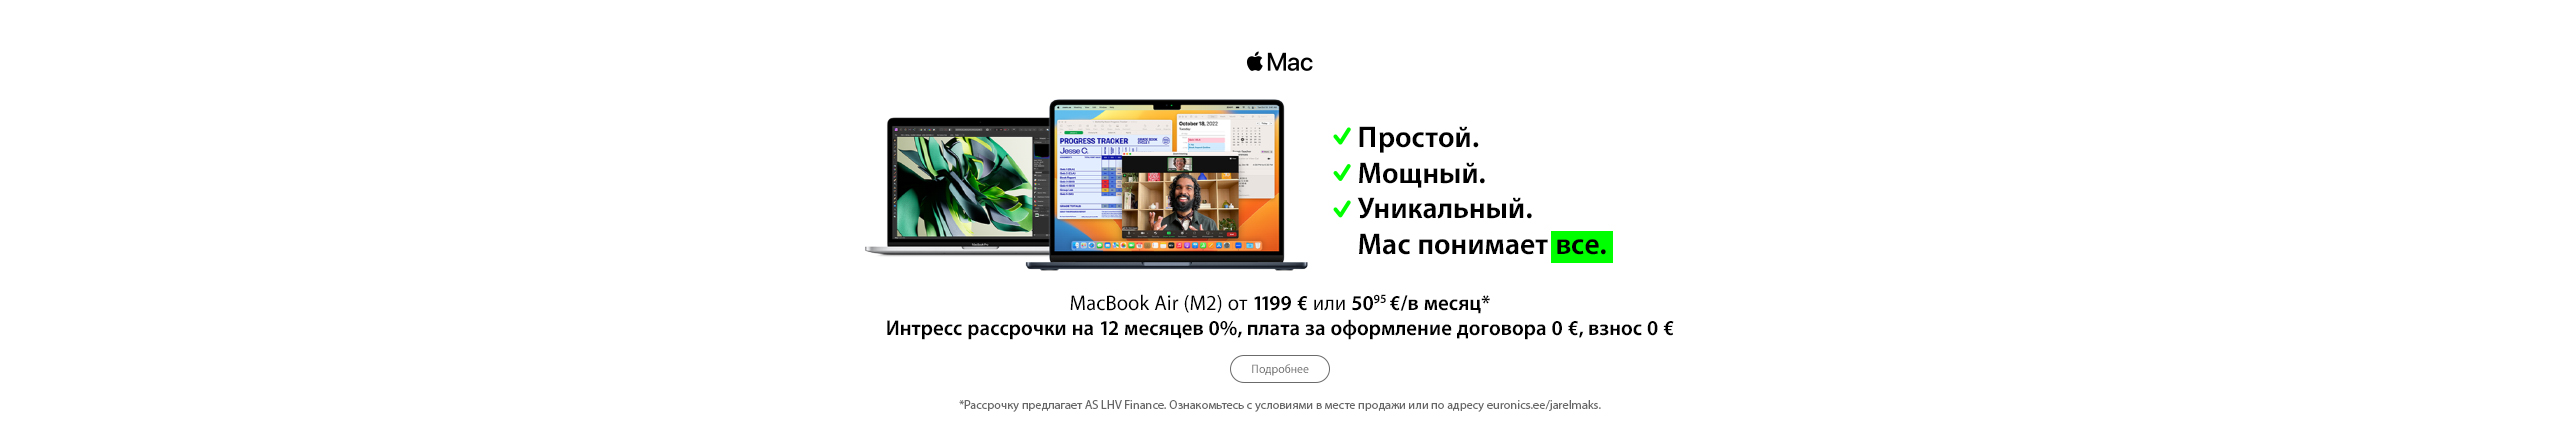 При покупке избранных ноутбуков Apple MacBook Air интресс рассрочки на 24 месяца 0%, плата за договор 0€, взнос 0€